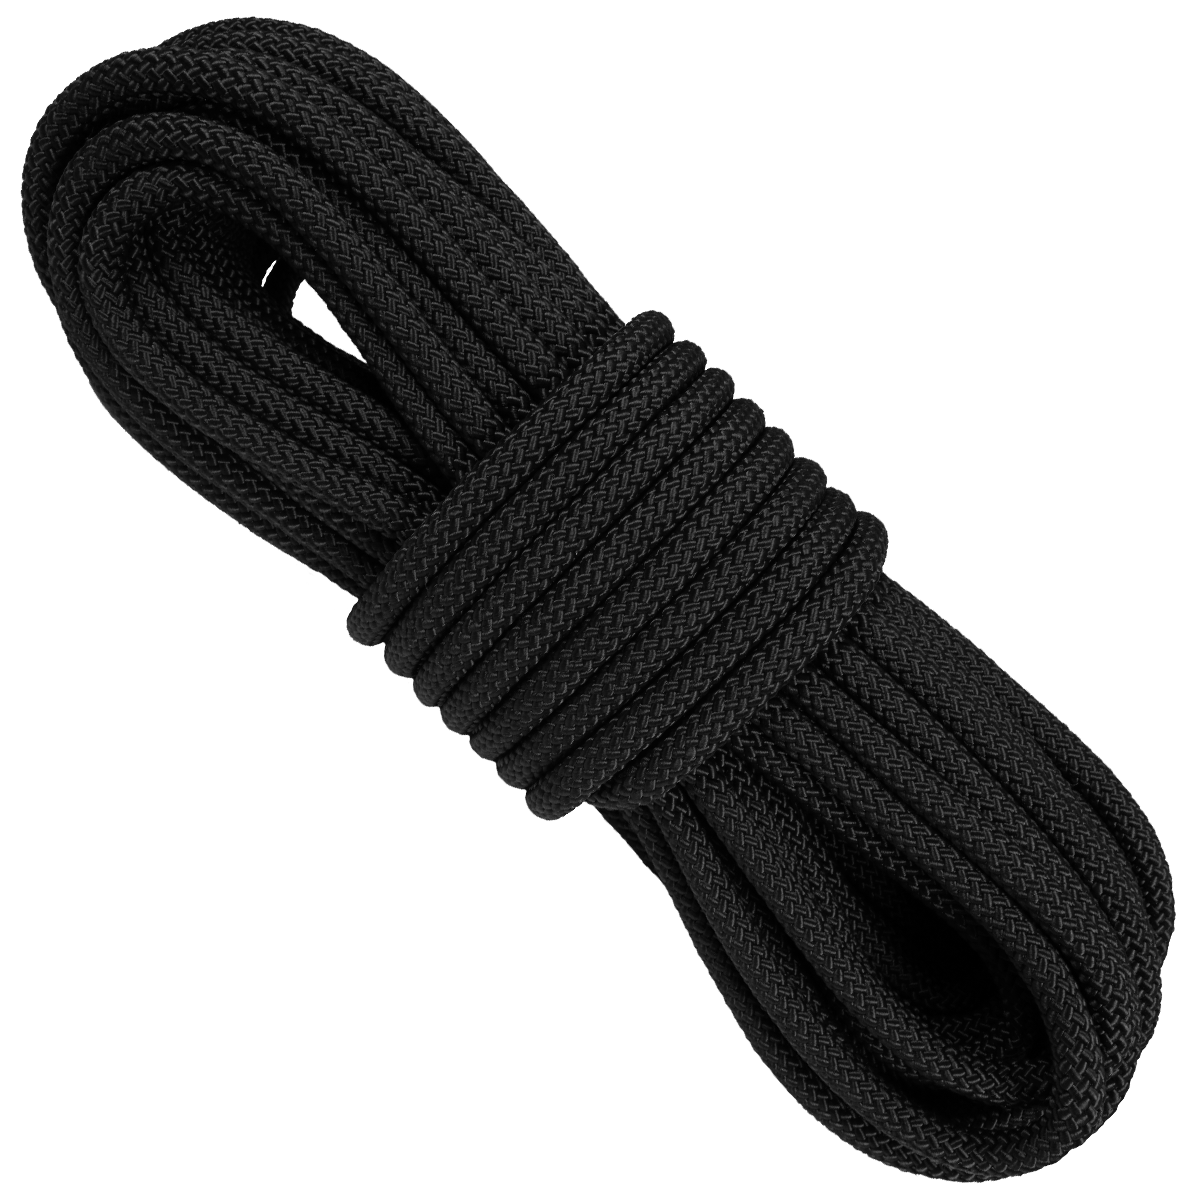 3/8 x 50' Heavy Duty Nylon Rope, Black